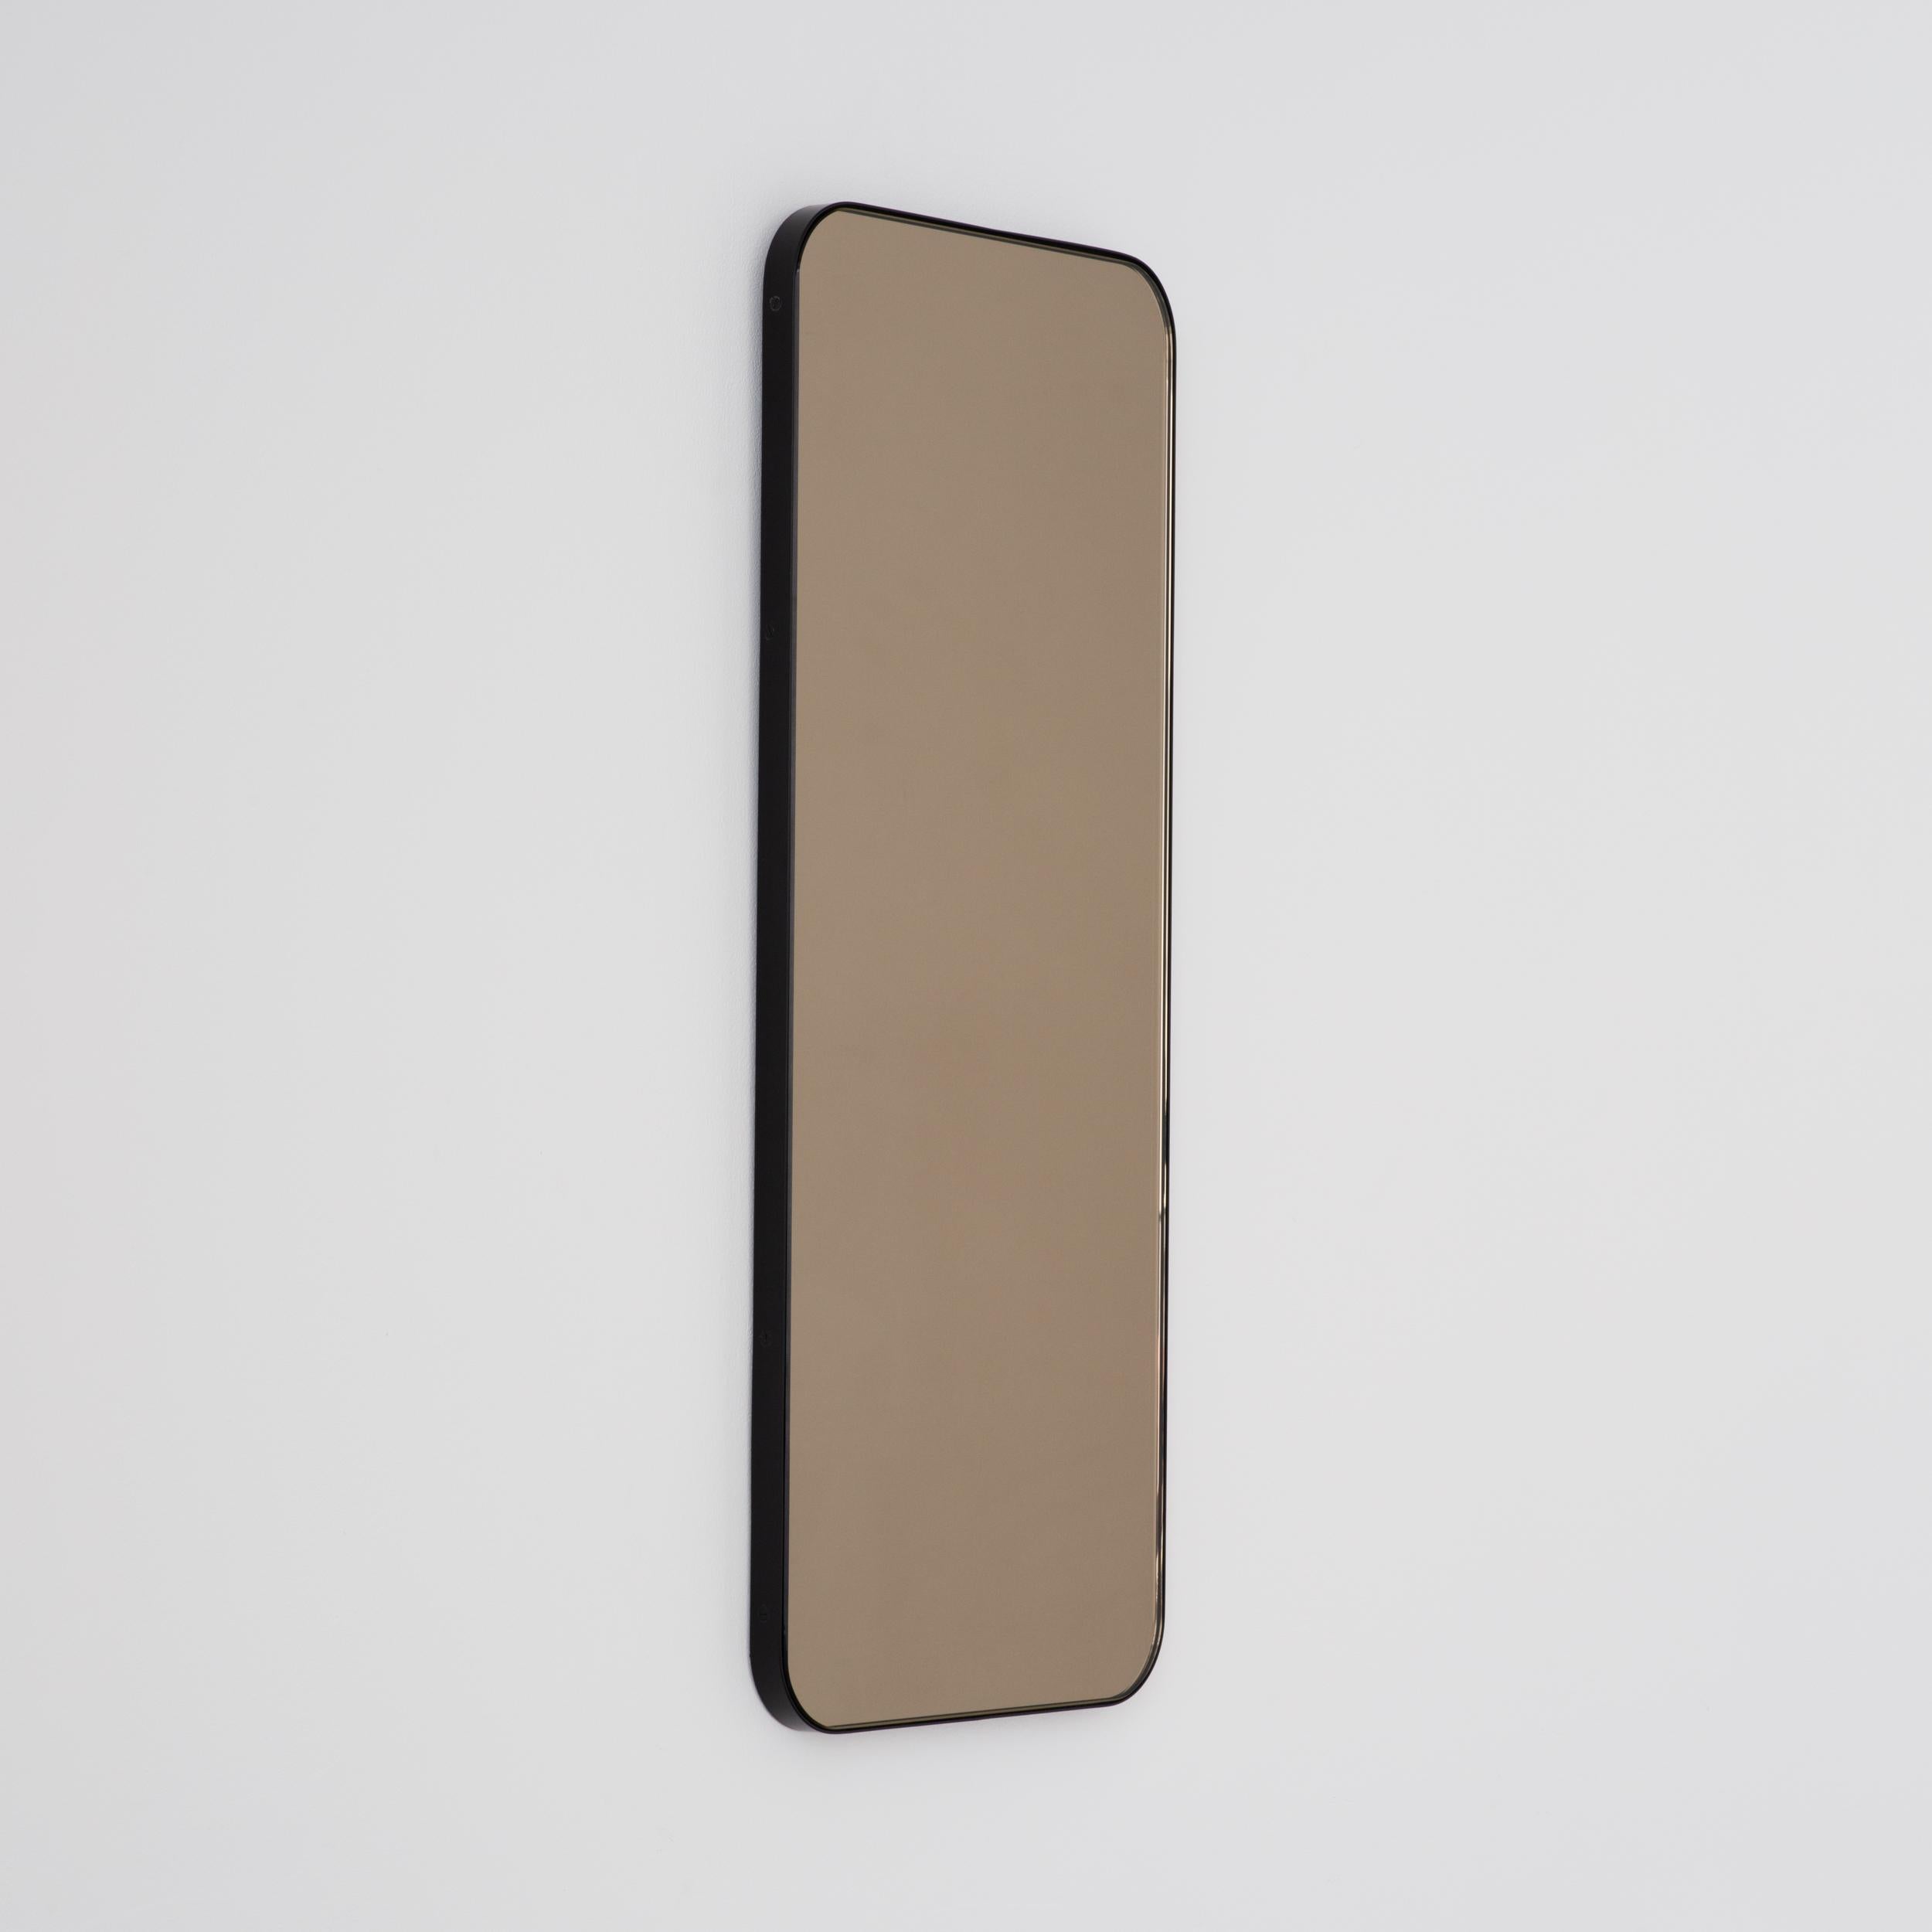 Zeitgenössischer, bronzefarbener, rechteckiger Spiegel mit elegantem schwarzem Rahmen. Teil der charmanten Quadris™ Kollektion, entworfen und handgefertigt in London, UK. 

Die Lieferung erfolgt mit einer speziellen Z-Stange für eine einfache